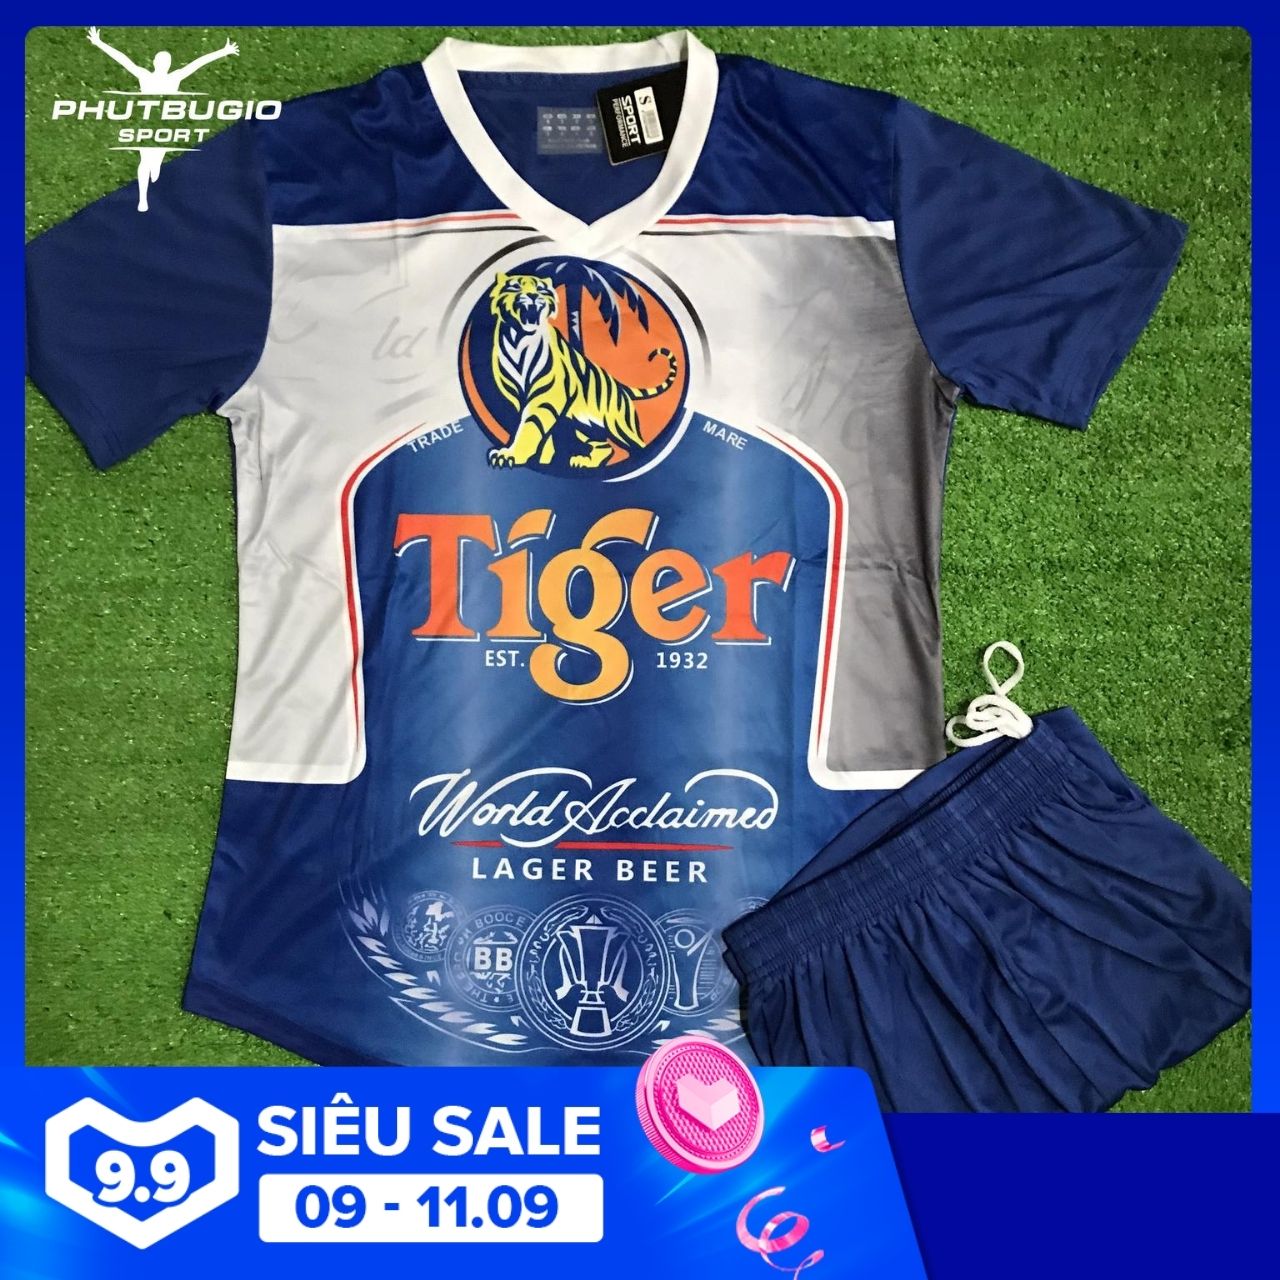 [ẢNH THẬT] Bộ áo bóng đá TIGER BIA / TIGER BEER mới nhất THUN LẠNH CAO CẤP - Quần áo đá banh chất tốt / Phút Bù Giờ Sports